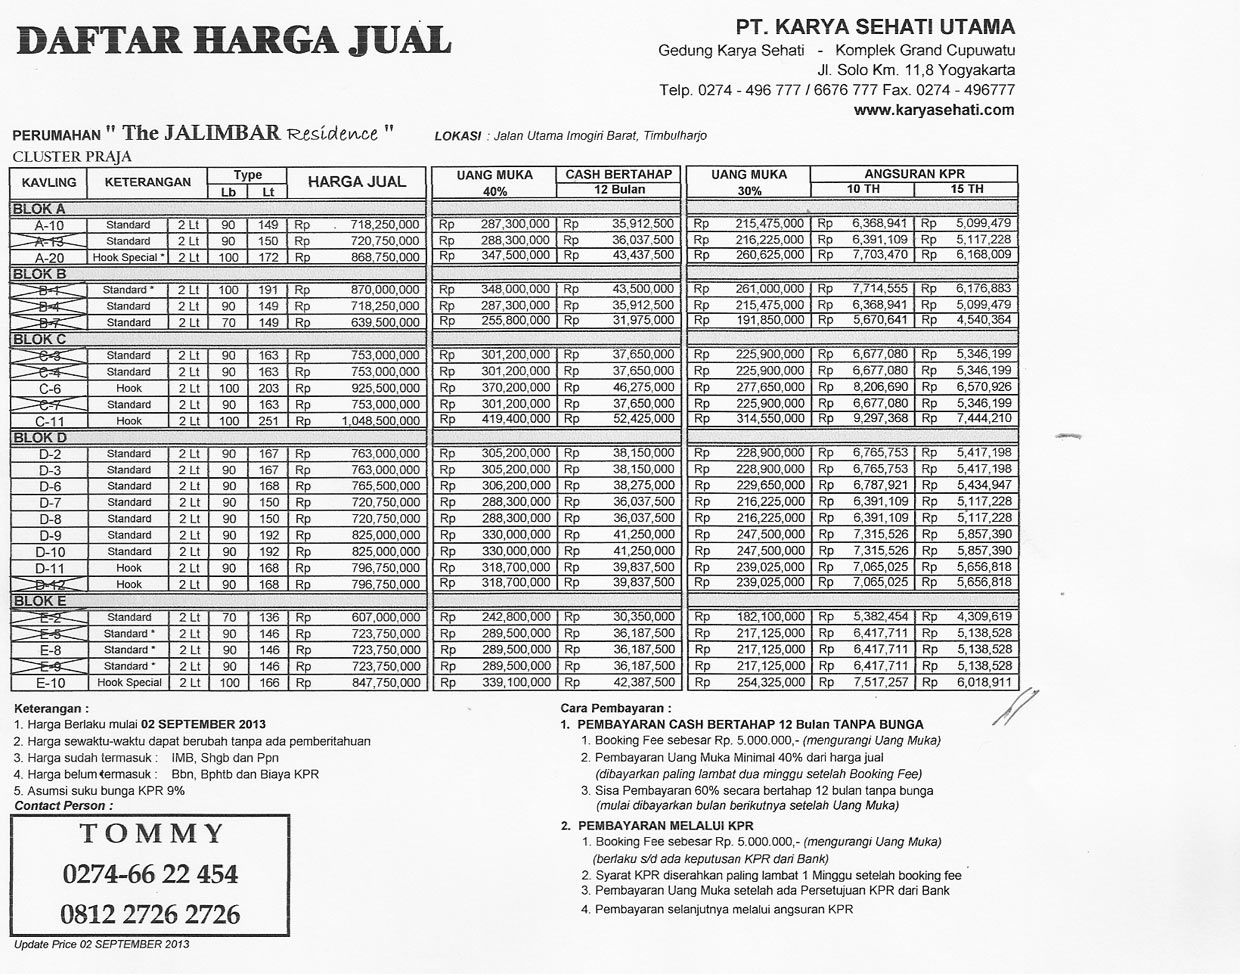 Info Daftar Harga Keramik  Garuda Harga Murah